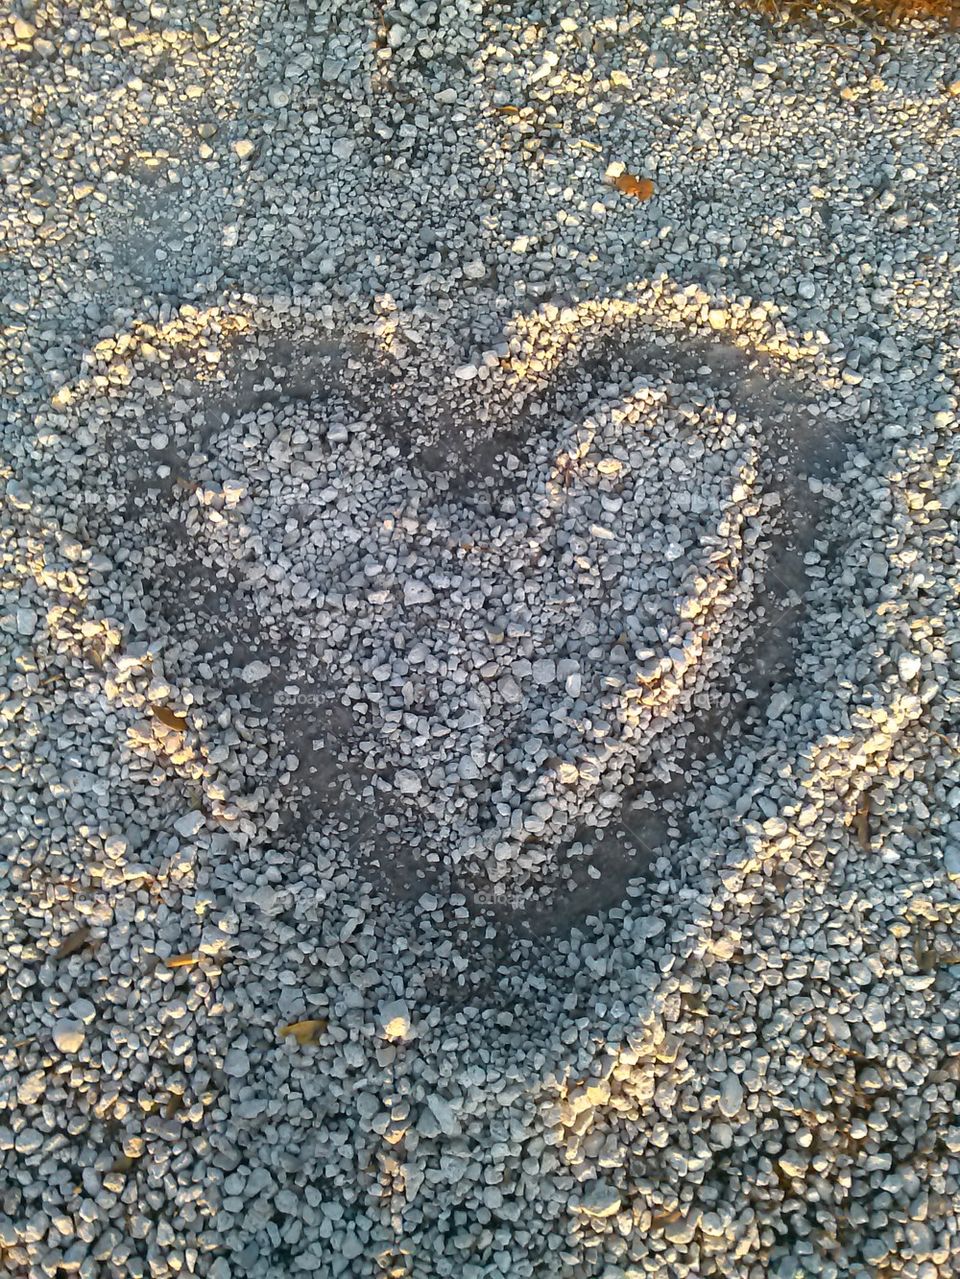 rock heart love